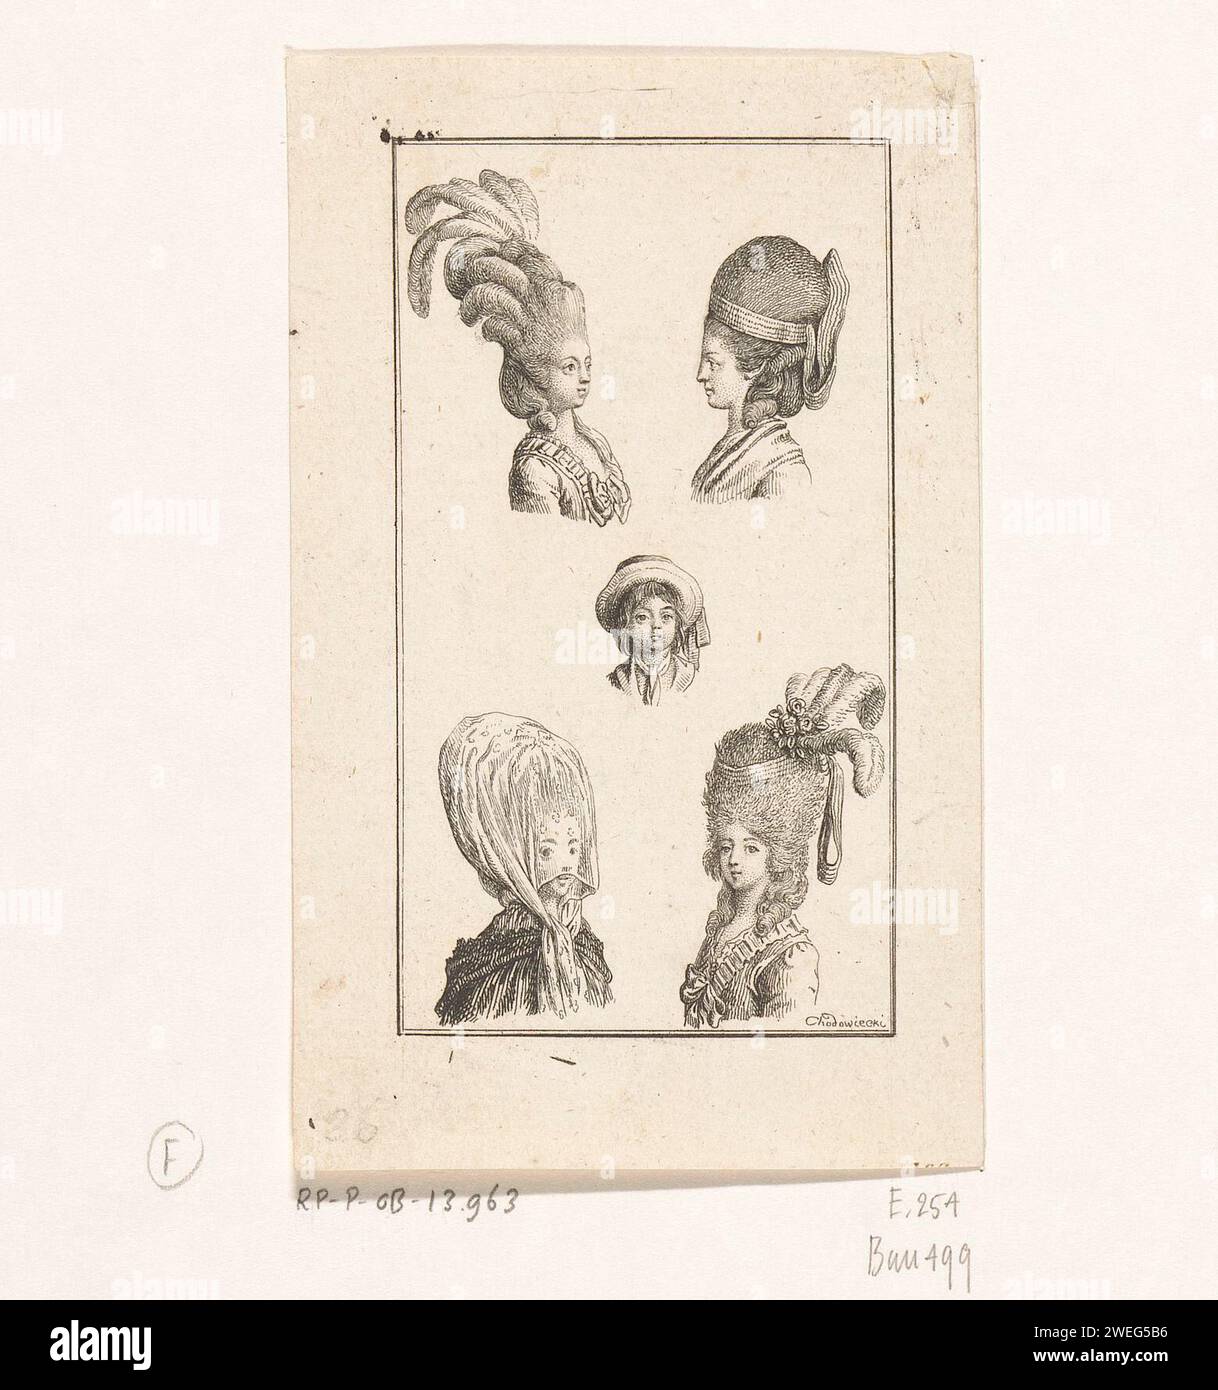 Fünf Damenfrisuren, Daniel Nikolaus Chodowiecki, 1778 drucken vier Damenköpfe mit verschiedenen hohen Frisuren, mit oder ohne Kopfbedeckung. In der Mitte ein Pudding mit einem Strohhut. Der zweite Zustand (N.A. RPK) ist mit Zahlen und Namen der Frisuren ausgestattet: Oben links = 1: Coefage de Noce; rechts = 2: Herisson; Mitte = 3: Philantropin; unten links = 4: Konservierungsmittel, rechts = 5: Herison Néglige. Papier ätzende Frisuren (HERISSON) - AA -  Frauen. Kopfbedeckung (+ Damenkleidung). Kopfbedeckung: Hut (+ Kinderkleidung) Stockfoto